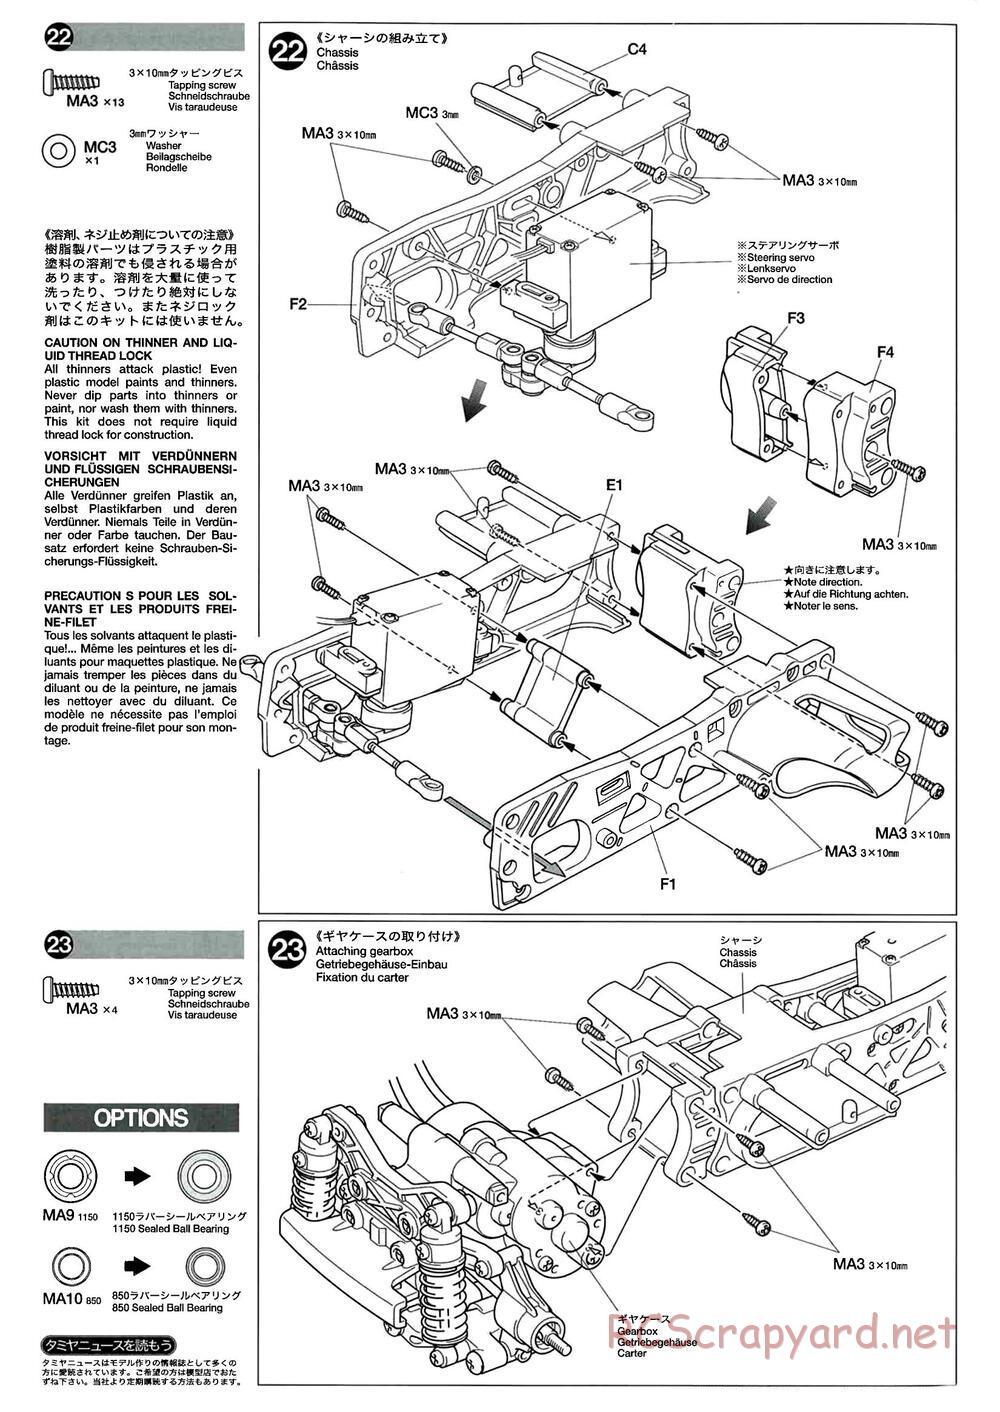 Tamiya - M-04L Chassis - Manual - Page 12